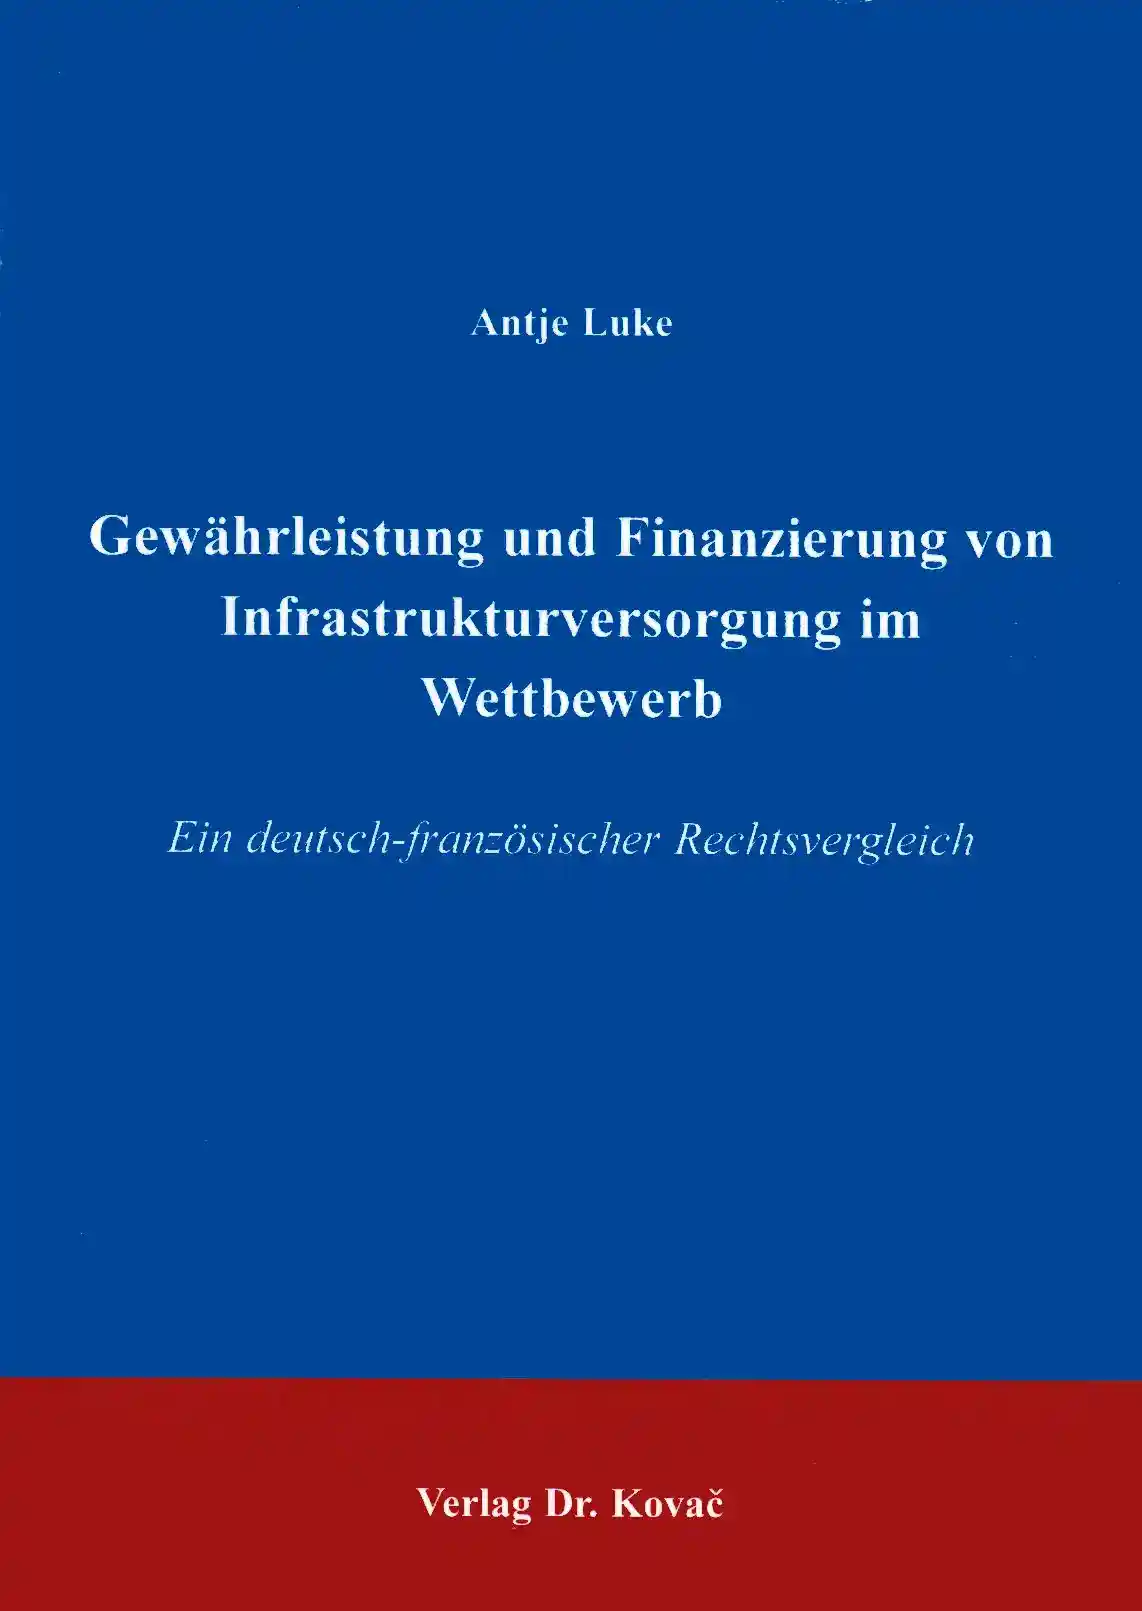 Gewährleistung und Finanzierung von Infrastrukturversorgung im Wettbewerb (Doktorarbeit)